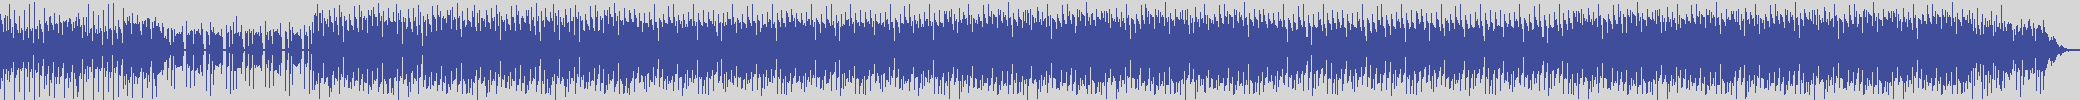 nf_boyz_records [NFY033] Jeff Carlton - Z Alone [Dry Mix] audio wave form